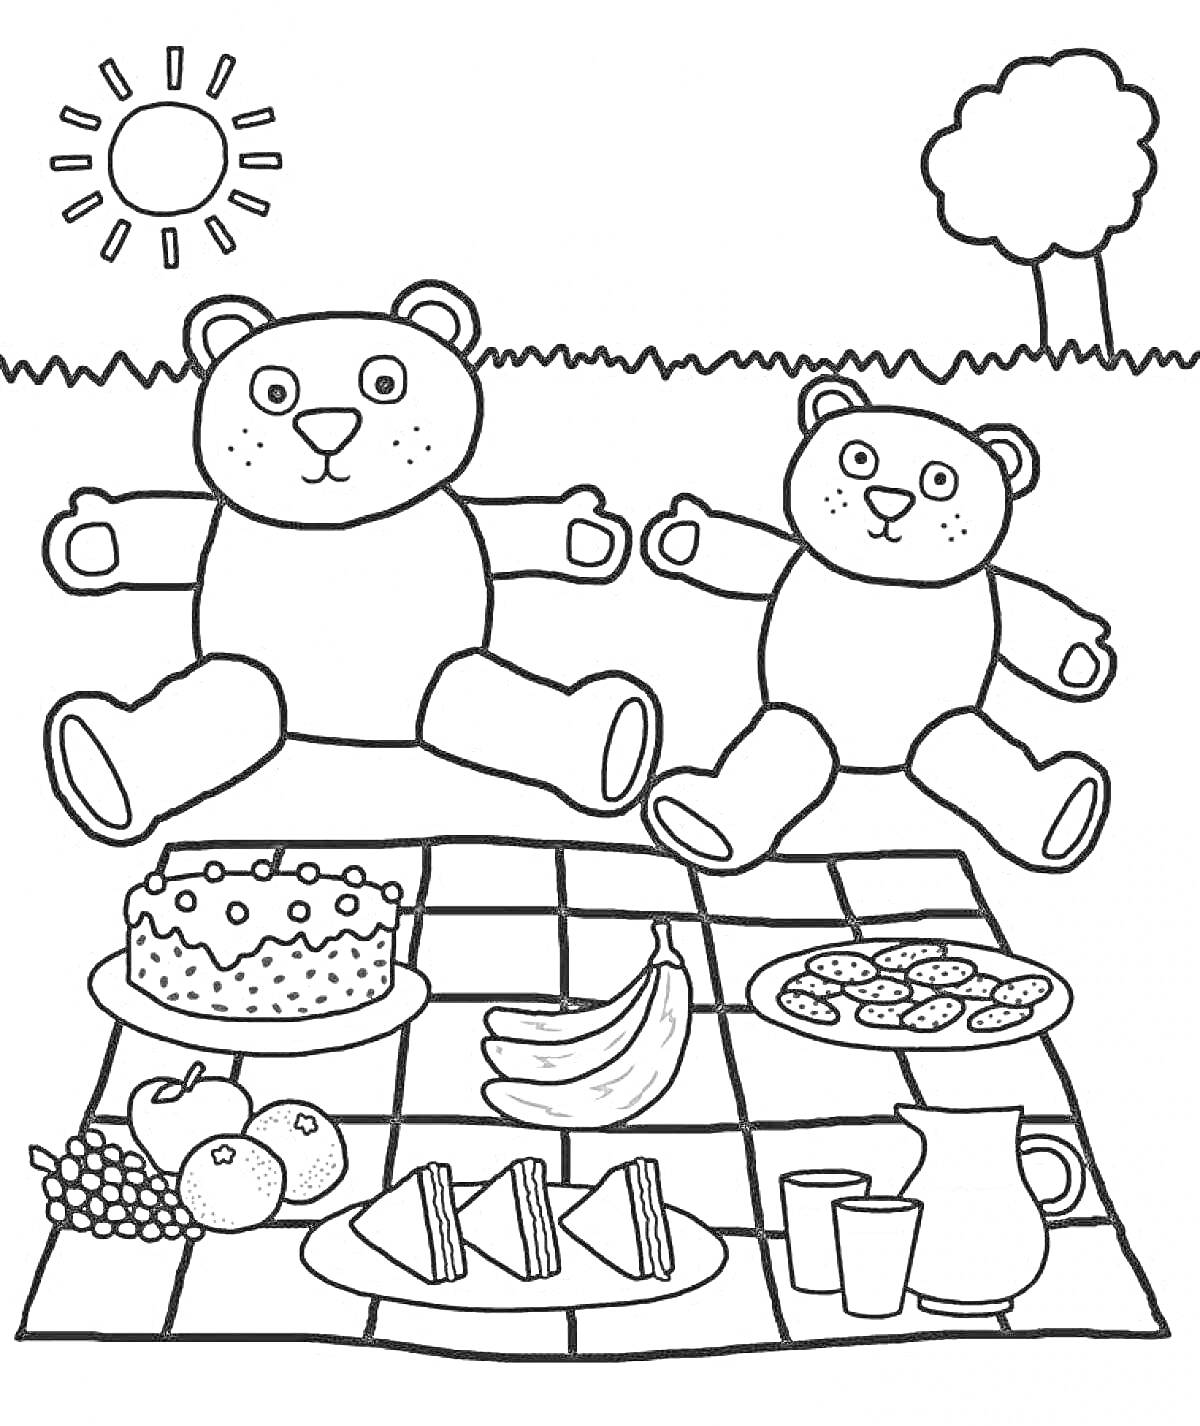 Раскраска Пикник с двумя медведями, пирогом, бананами, печеньем, виноградом, яблоками, сэндвичами, кувшином и двумя стаканами